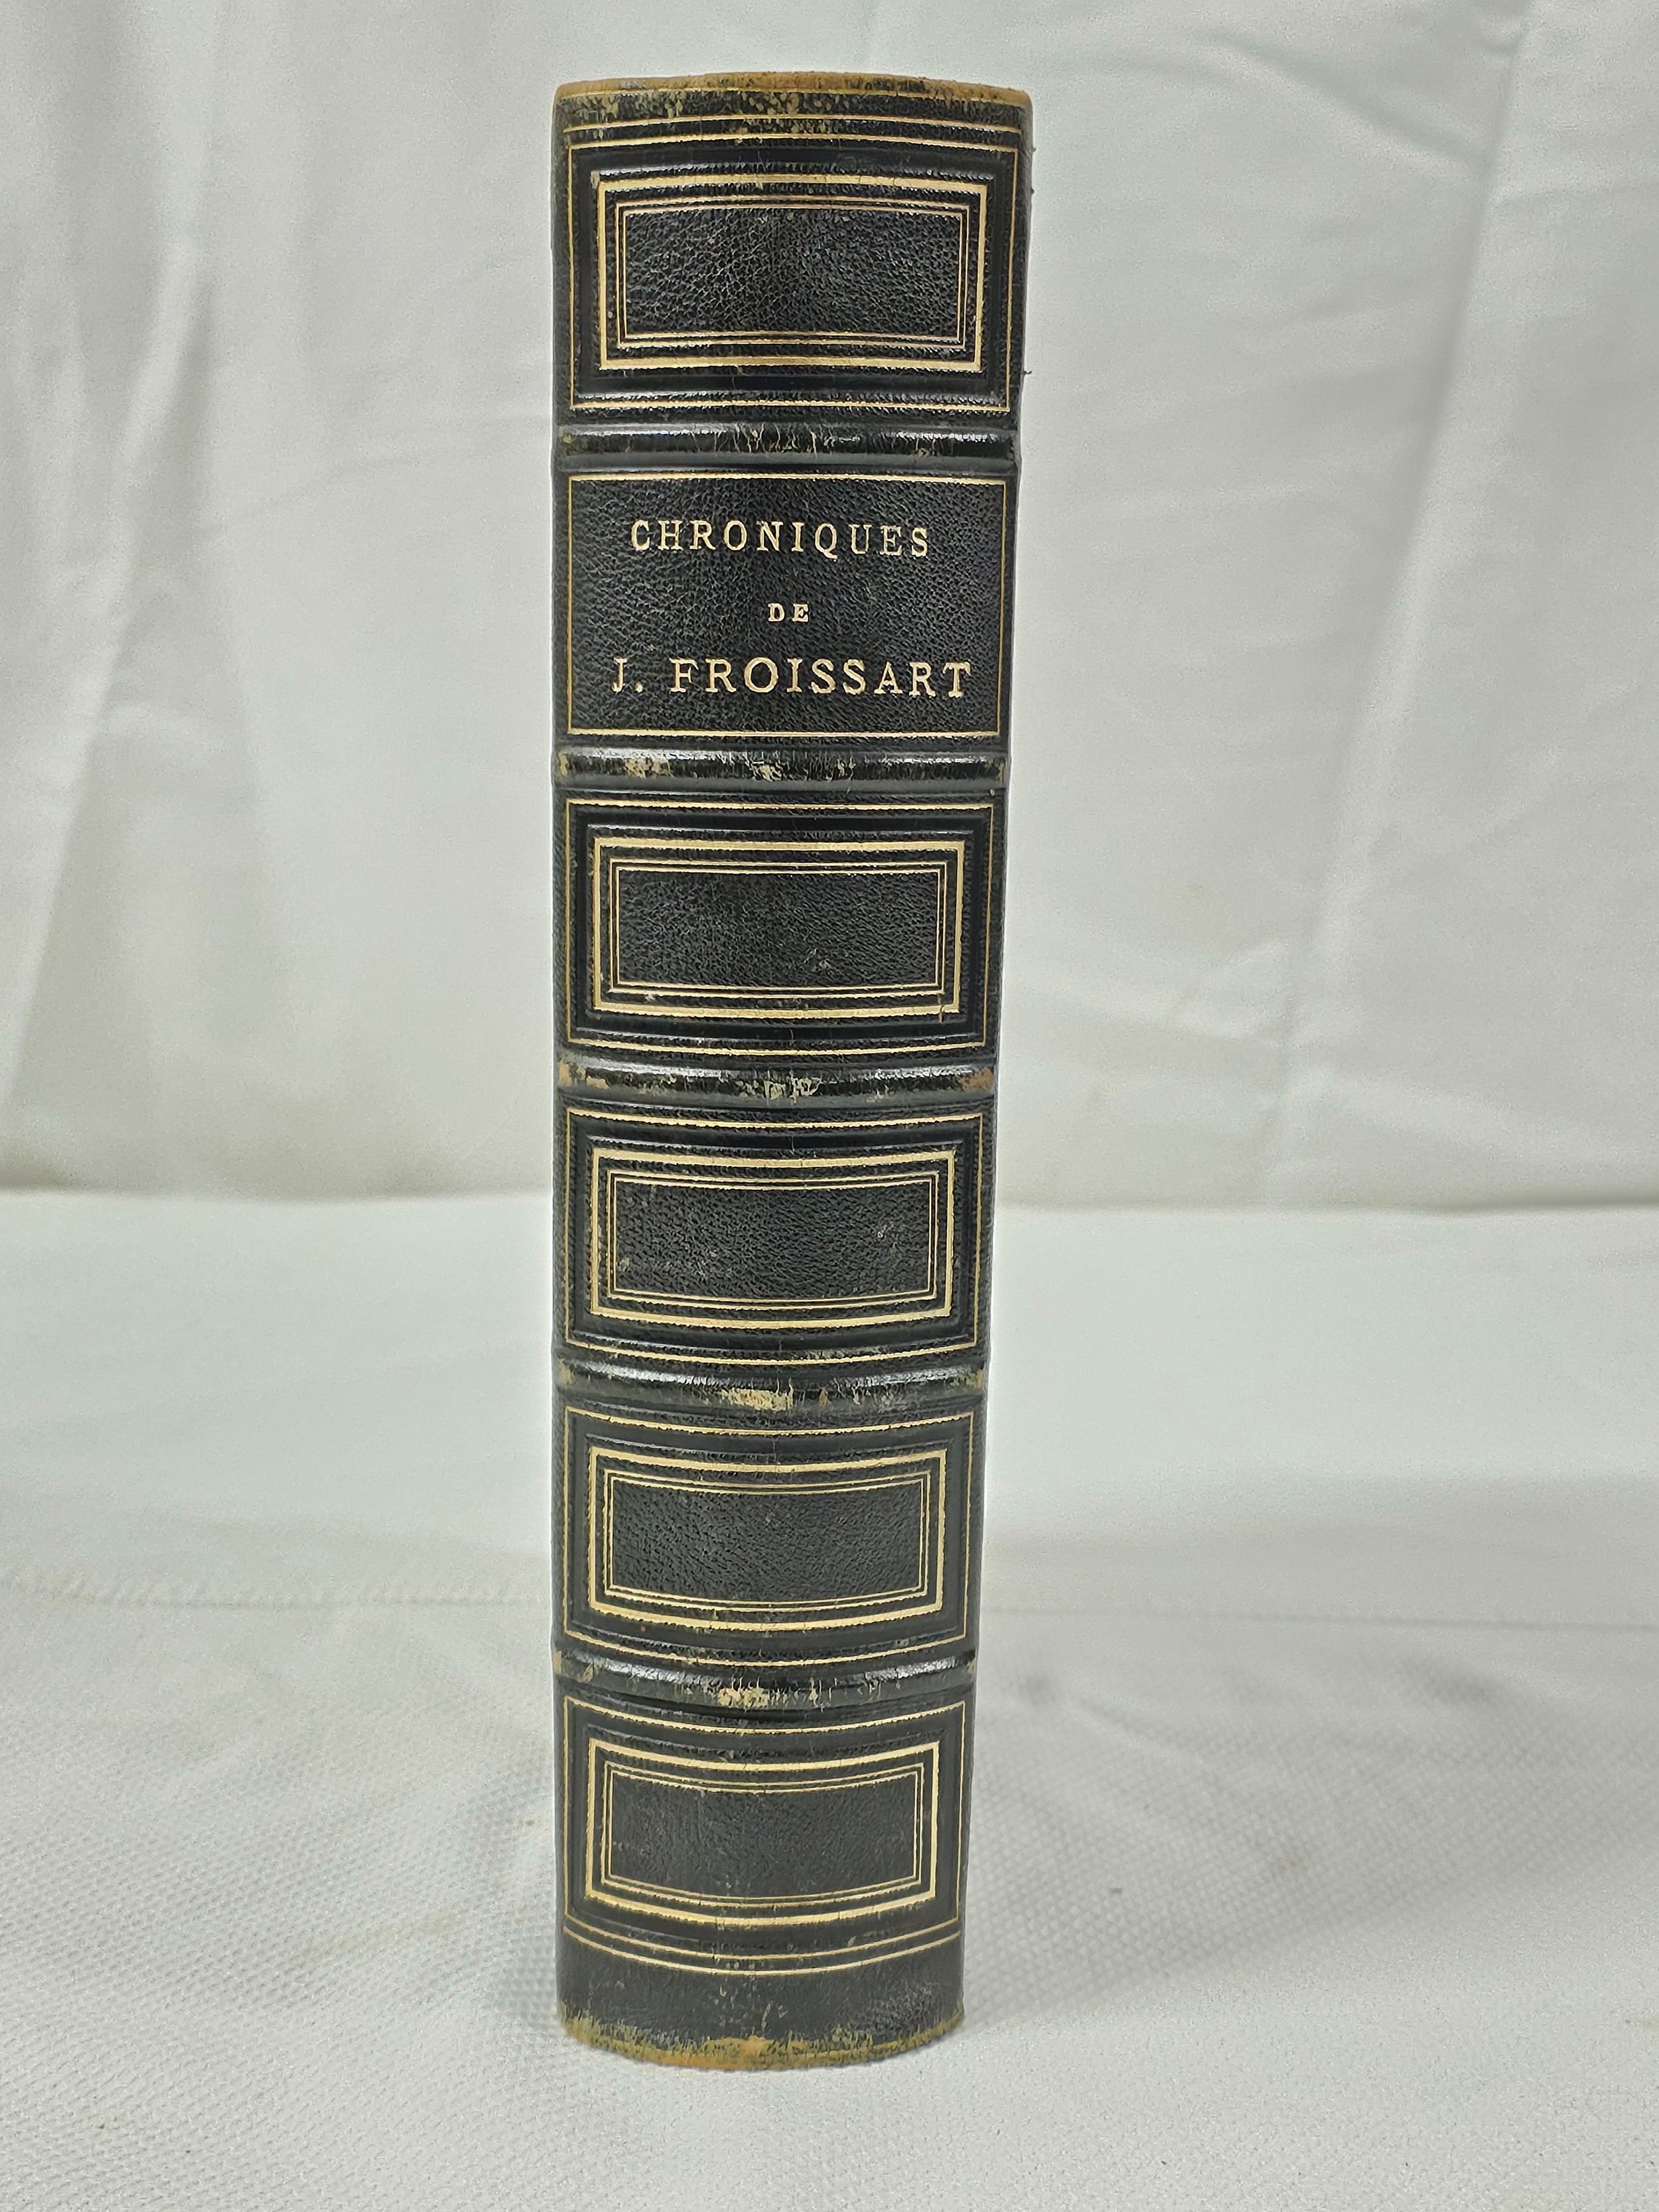 Chroniques De J. Froissart. de Witt, née Guizot. Published by Paris Librairie Hachette 1881.